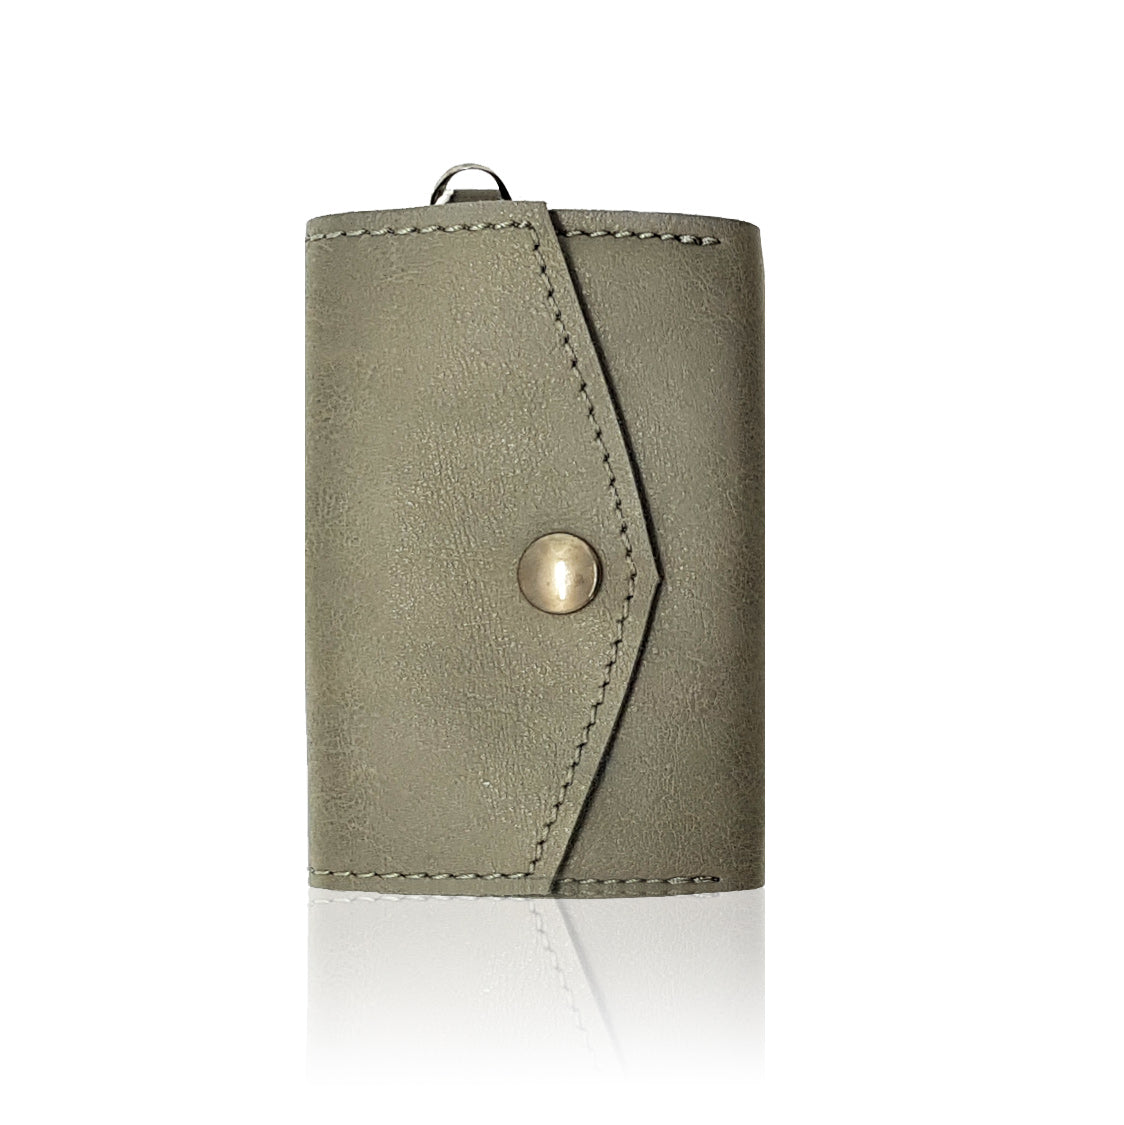 Sörenberg Purse - Premium Bags & accessories from L&E Studio